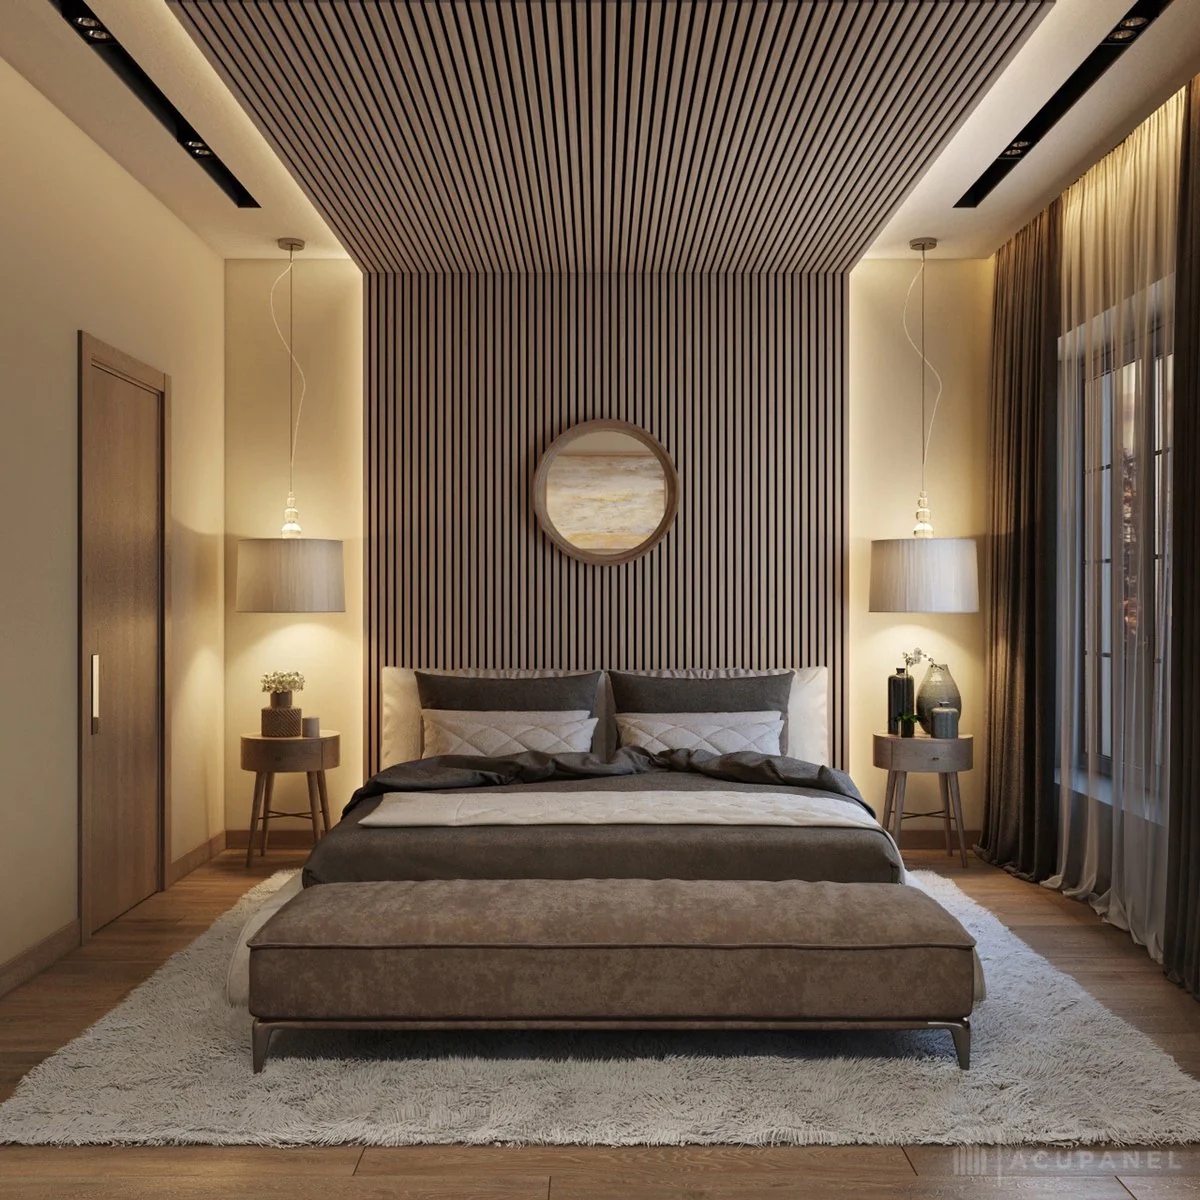 لوستر آویز مدرن در اتاق خواب با دیوارپوش چوبی مدرن